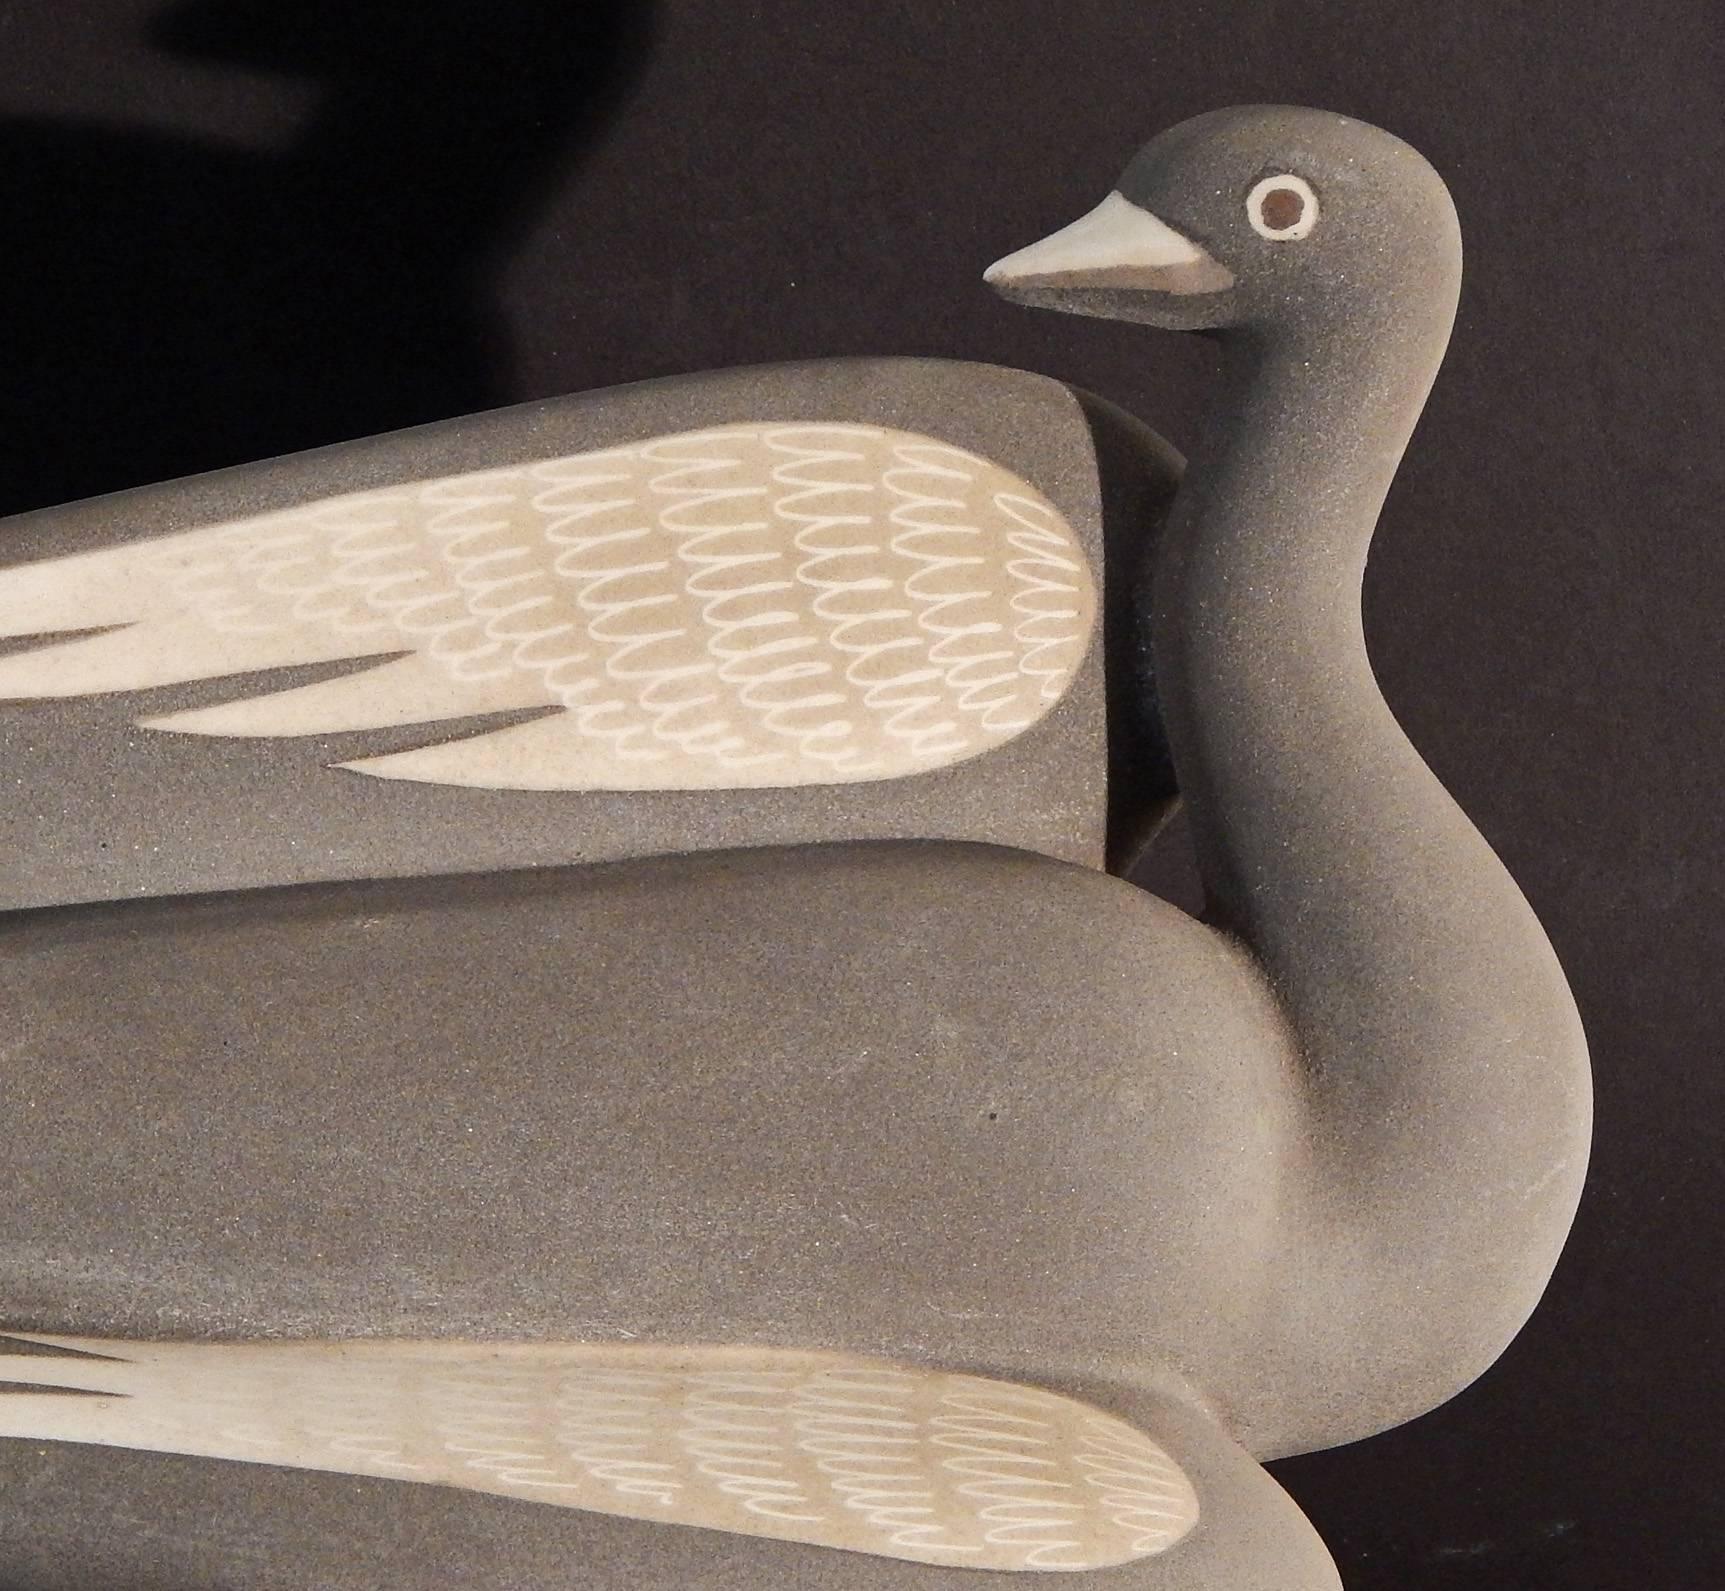 Der Schwan, eine der dynamischsten und erfolgreichsten Skulpturen von Waylande Gregory, ist in einer samtigen grauen Flanellfarbe glasiert. Der Schwan wird von zwei Seiten gezeigt, wobei seine schönen taupefarbenen Flügel voll zur Geltung kommen.